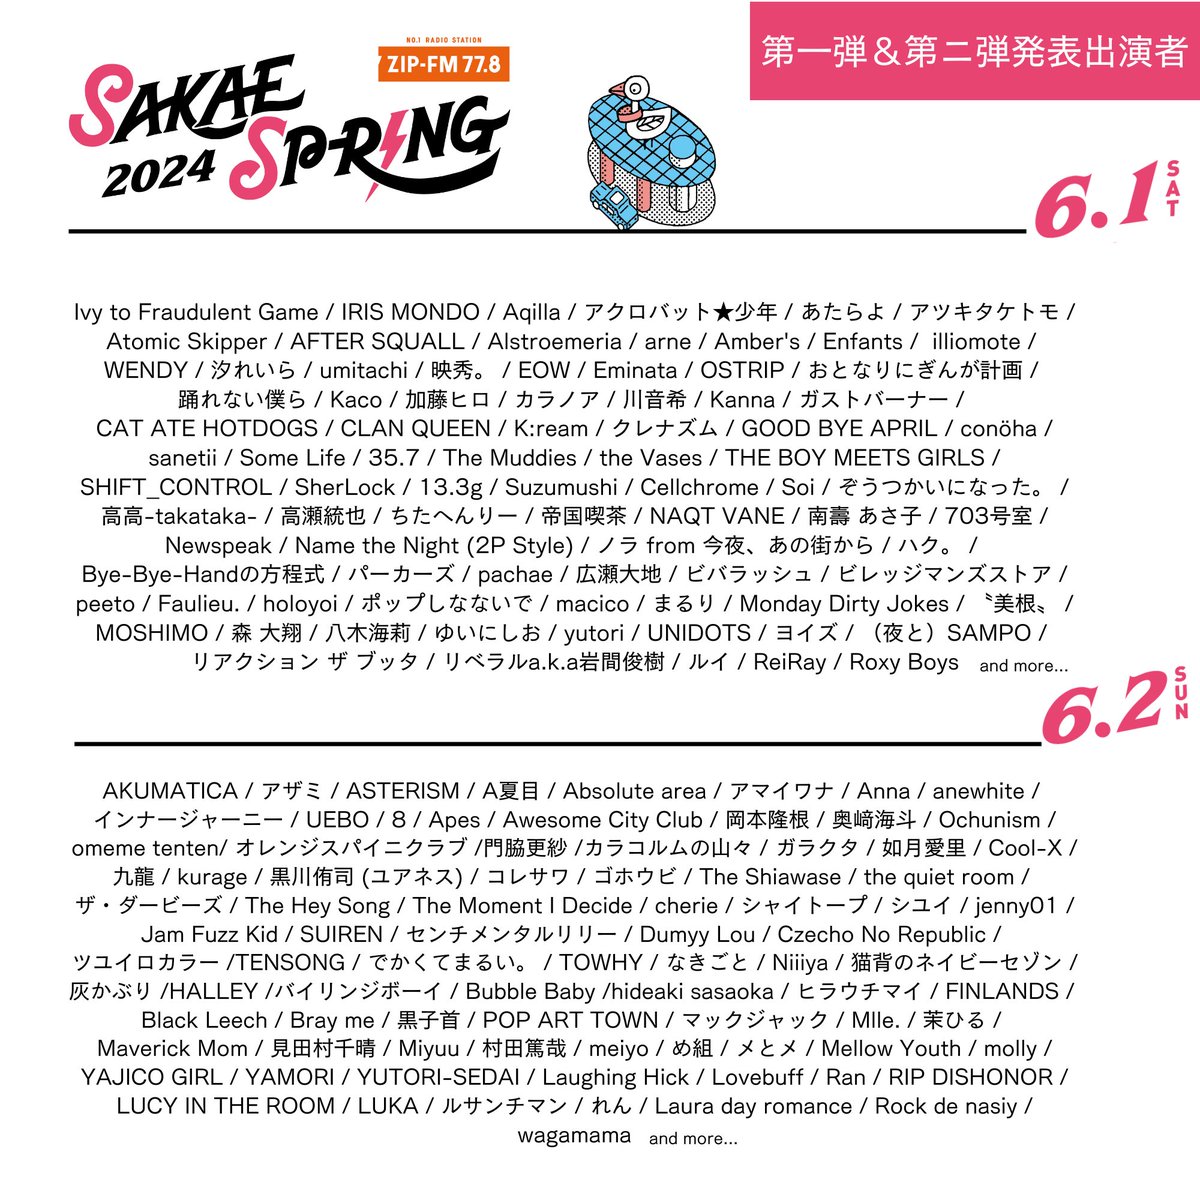 【ライブ情報解禁🔥🔥】 東海地区最大級のライブ サーキット「SAKAE SP-RING 2024」（@SAKAE_SPRING）への出演が決定！ TOWHYは6/2(日)出演します！！ 本日よりチケット先行予約開始🎫 詳しくは オフィシャルサイトをチェック💁🏻‍♂️🔗 sakaespring.com #サカスプ